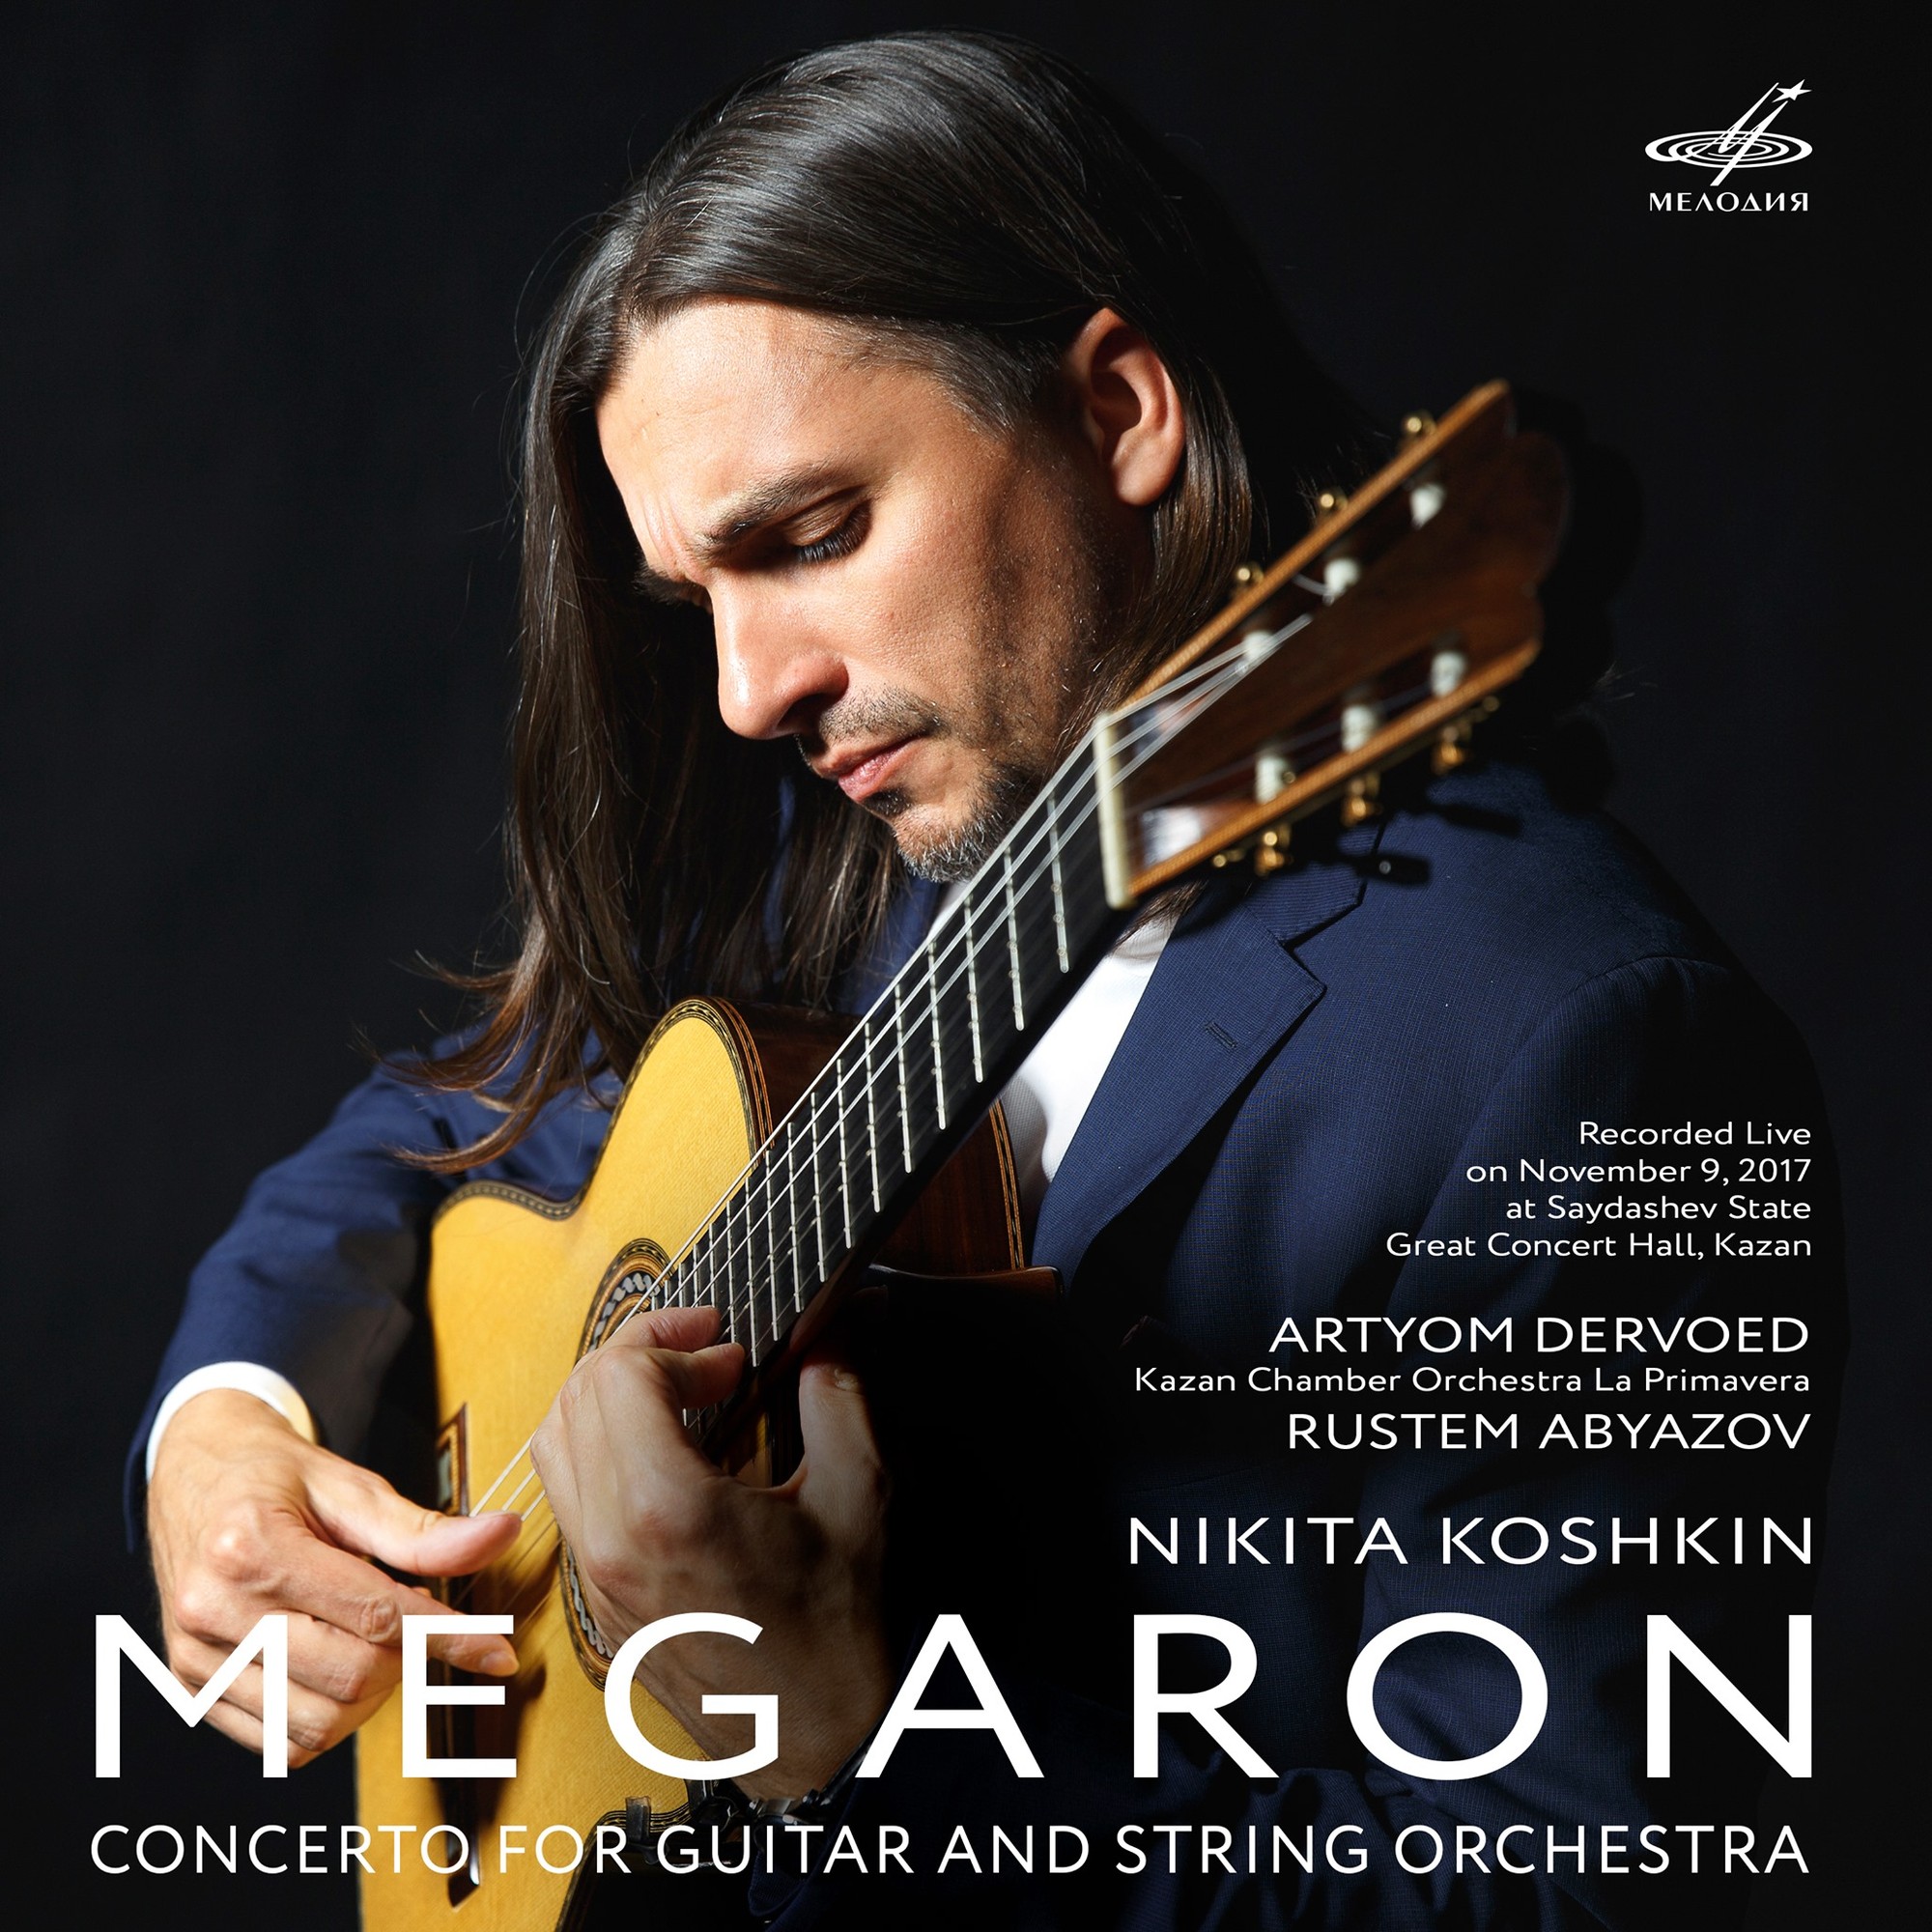 Кошкин: Концерт для гитары и струнного оркестра "Мегарон"